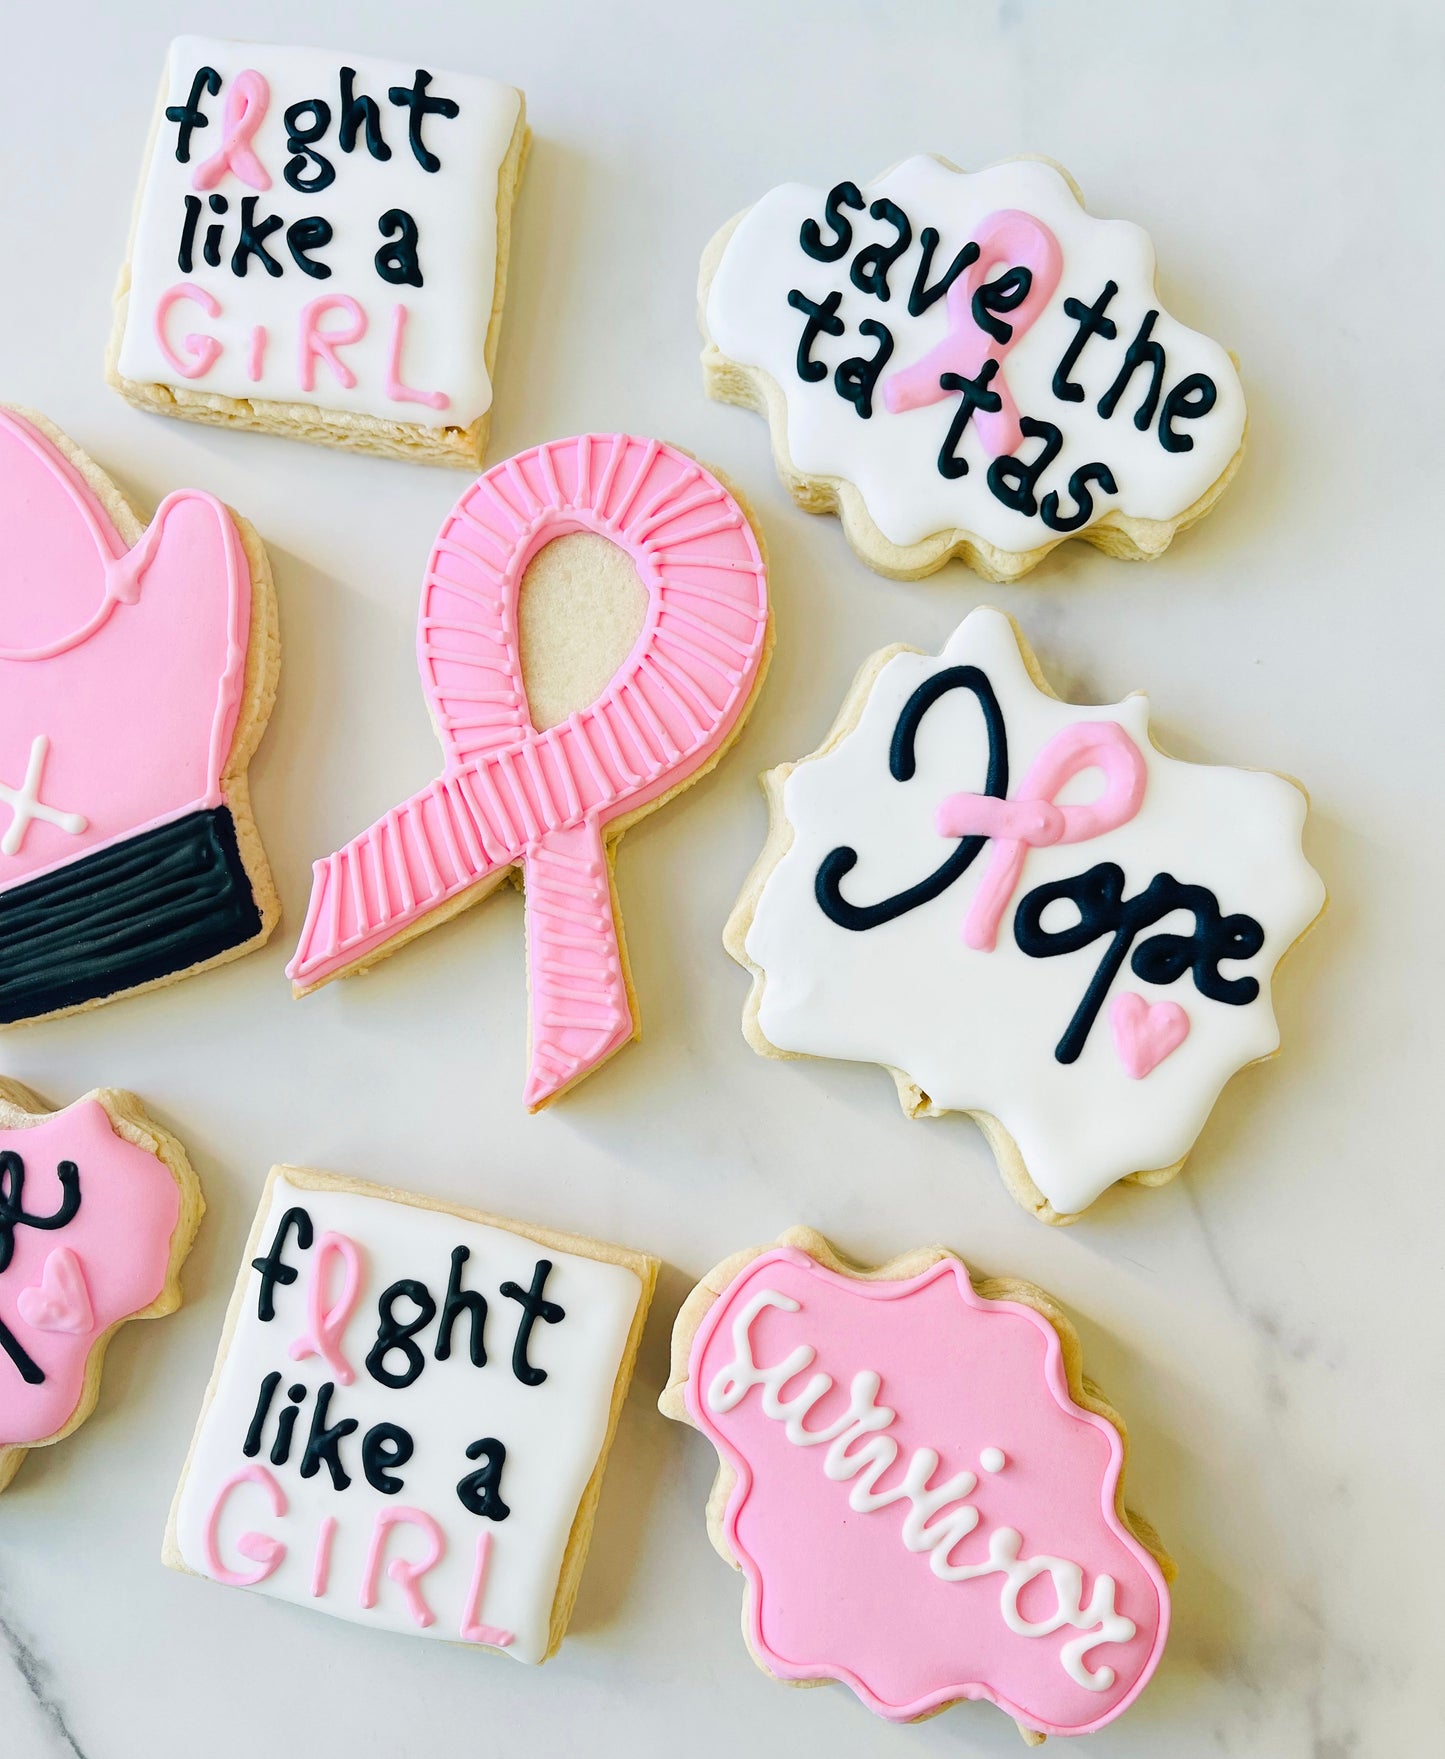 Cancer Awareness Sugar Cookies